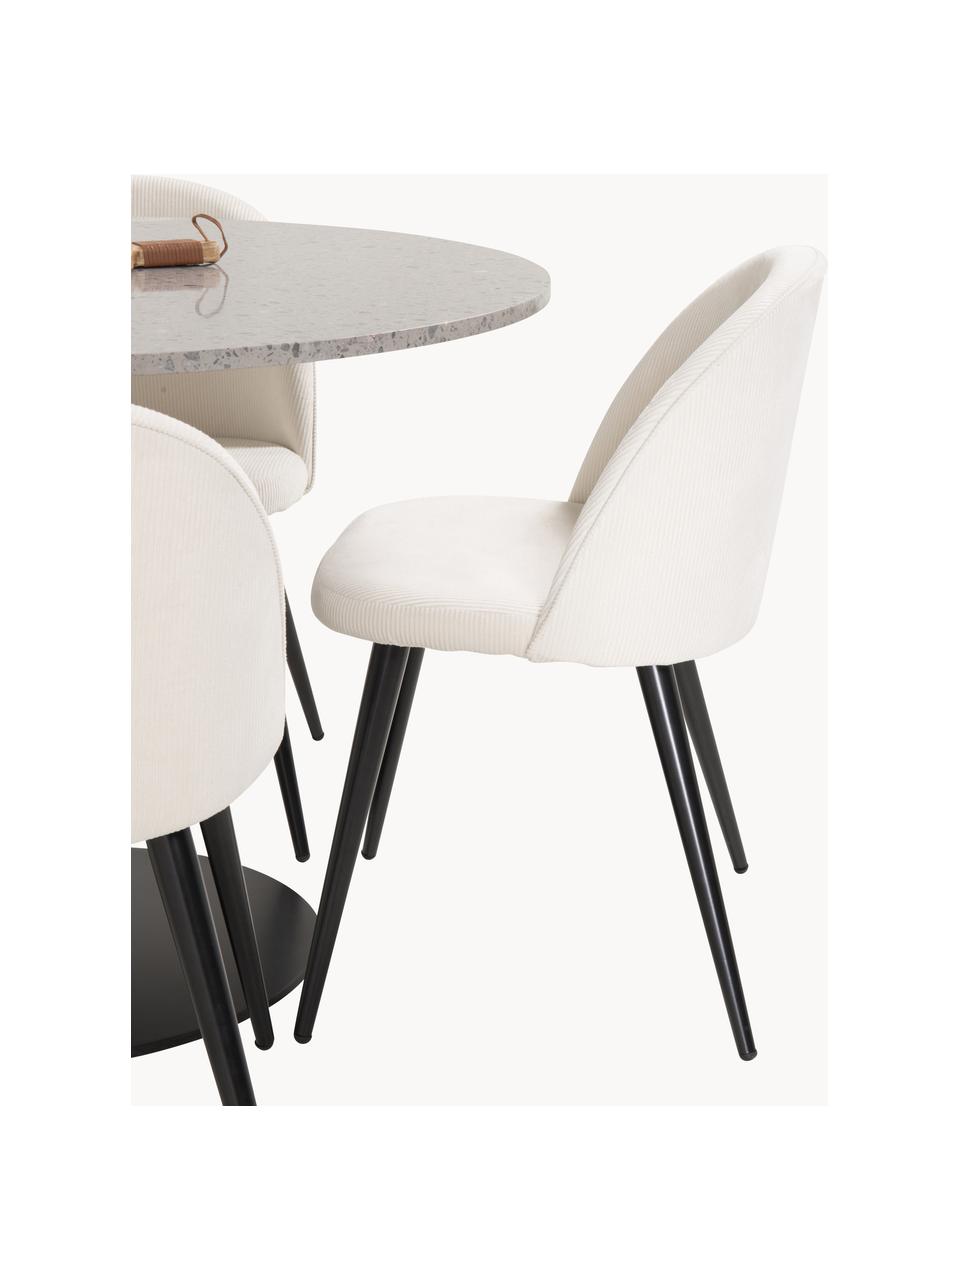 Table ronde avec chaises Razzia, 5 élém., Tissu beige, noir, tons gris, Lot de différentes tailles